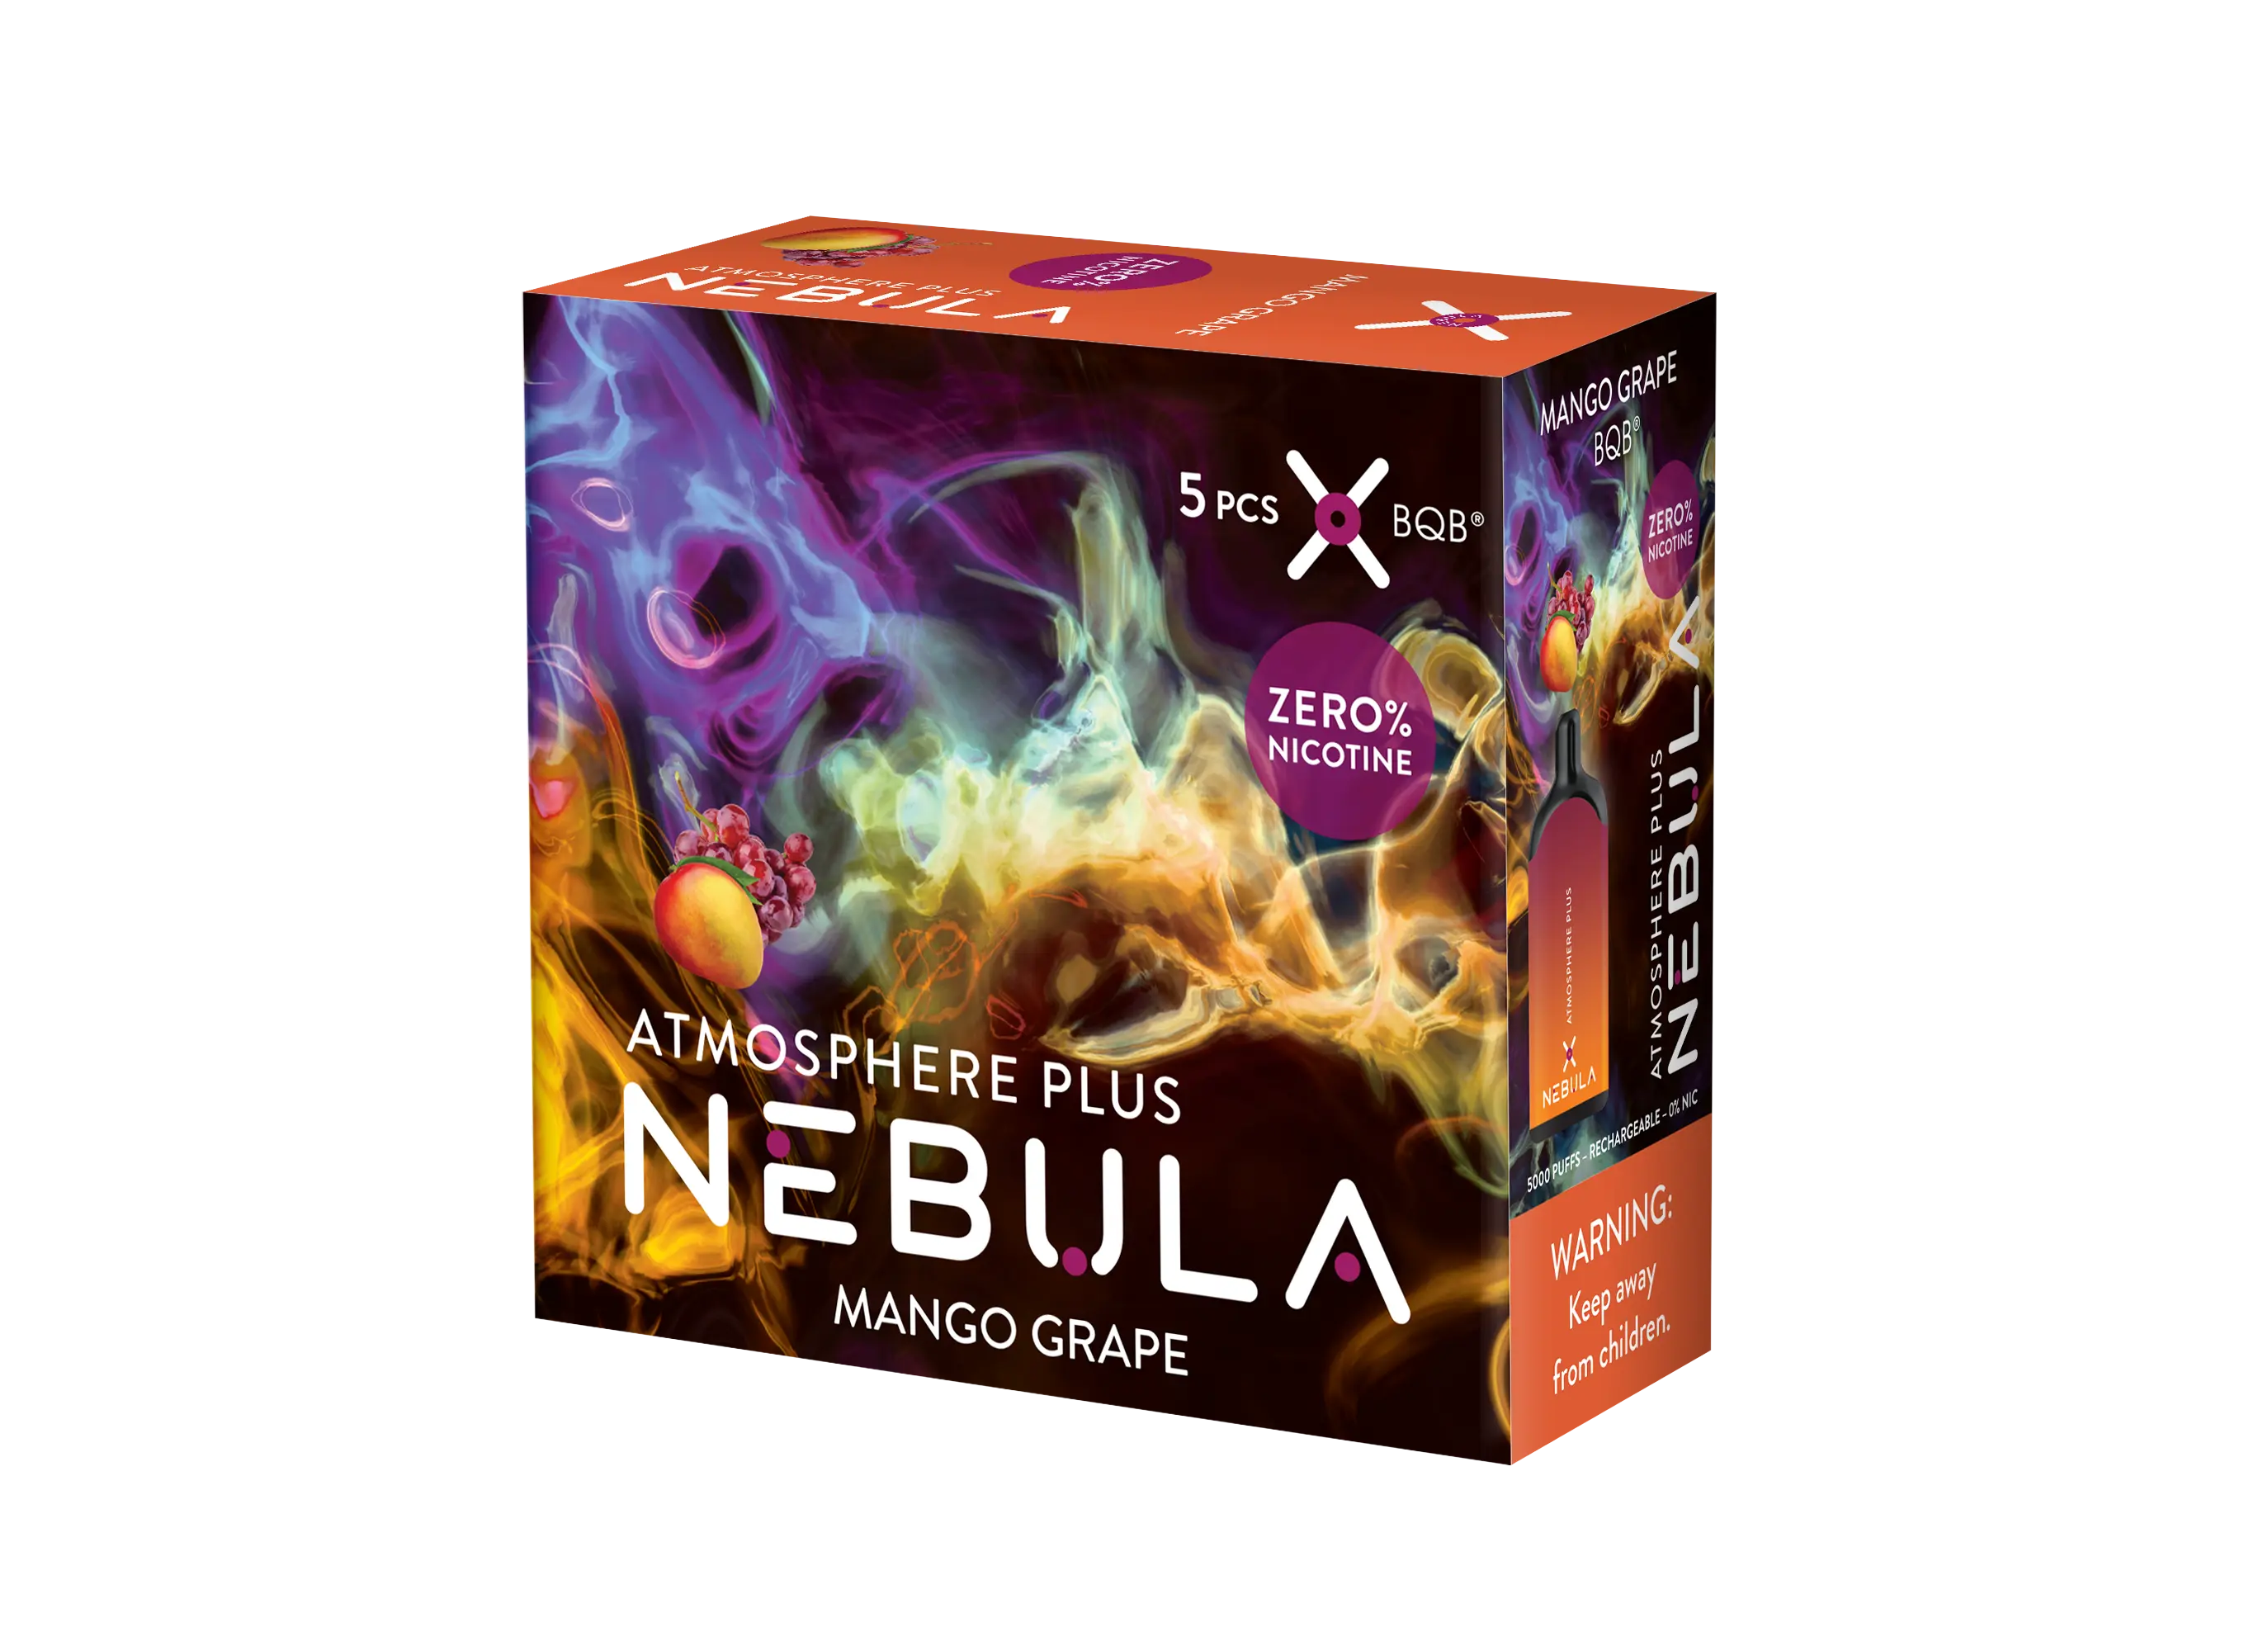 Nebula Atmosphere Plus 0% 5000 Puffs - Mango Grape - B2B Nebula